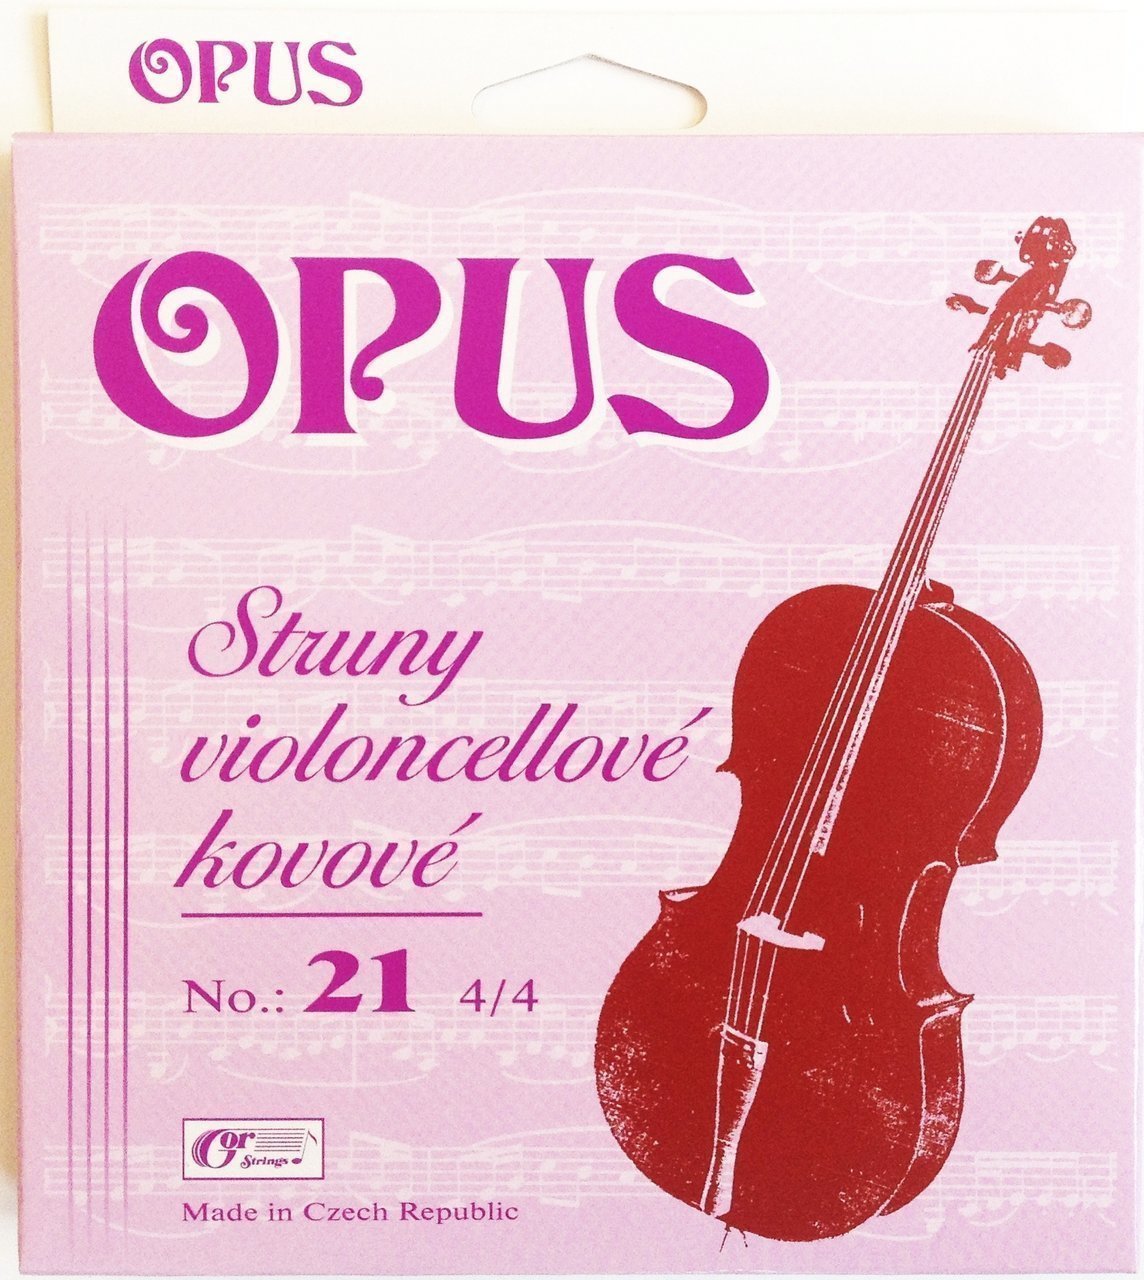 Cello Strings Gorstrings OPUS-21-D Cello Strings